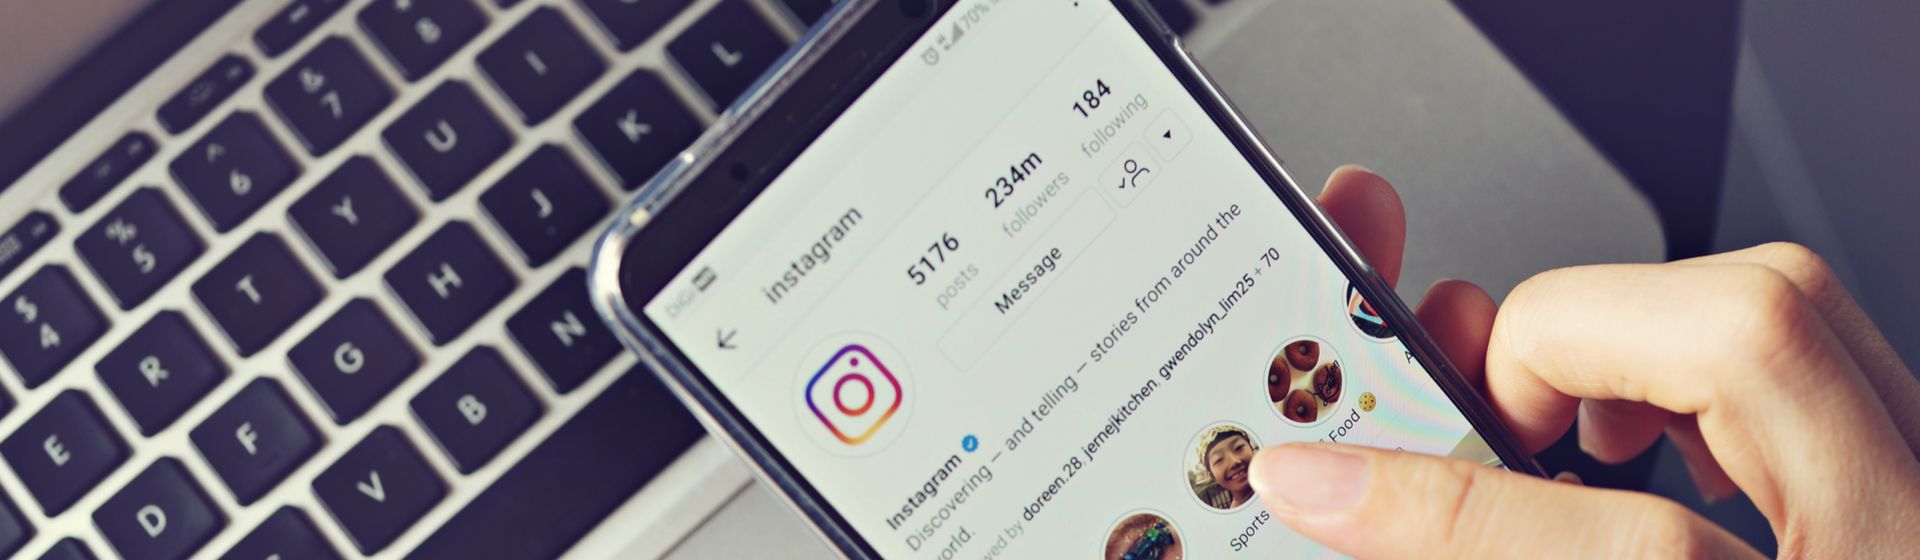 Capa do post: Como deixar o Instagram escuro